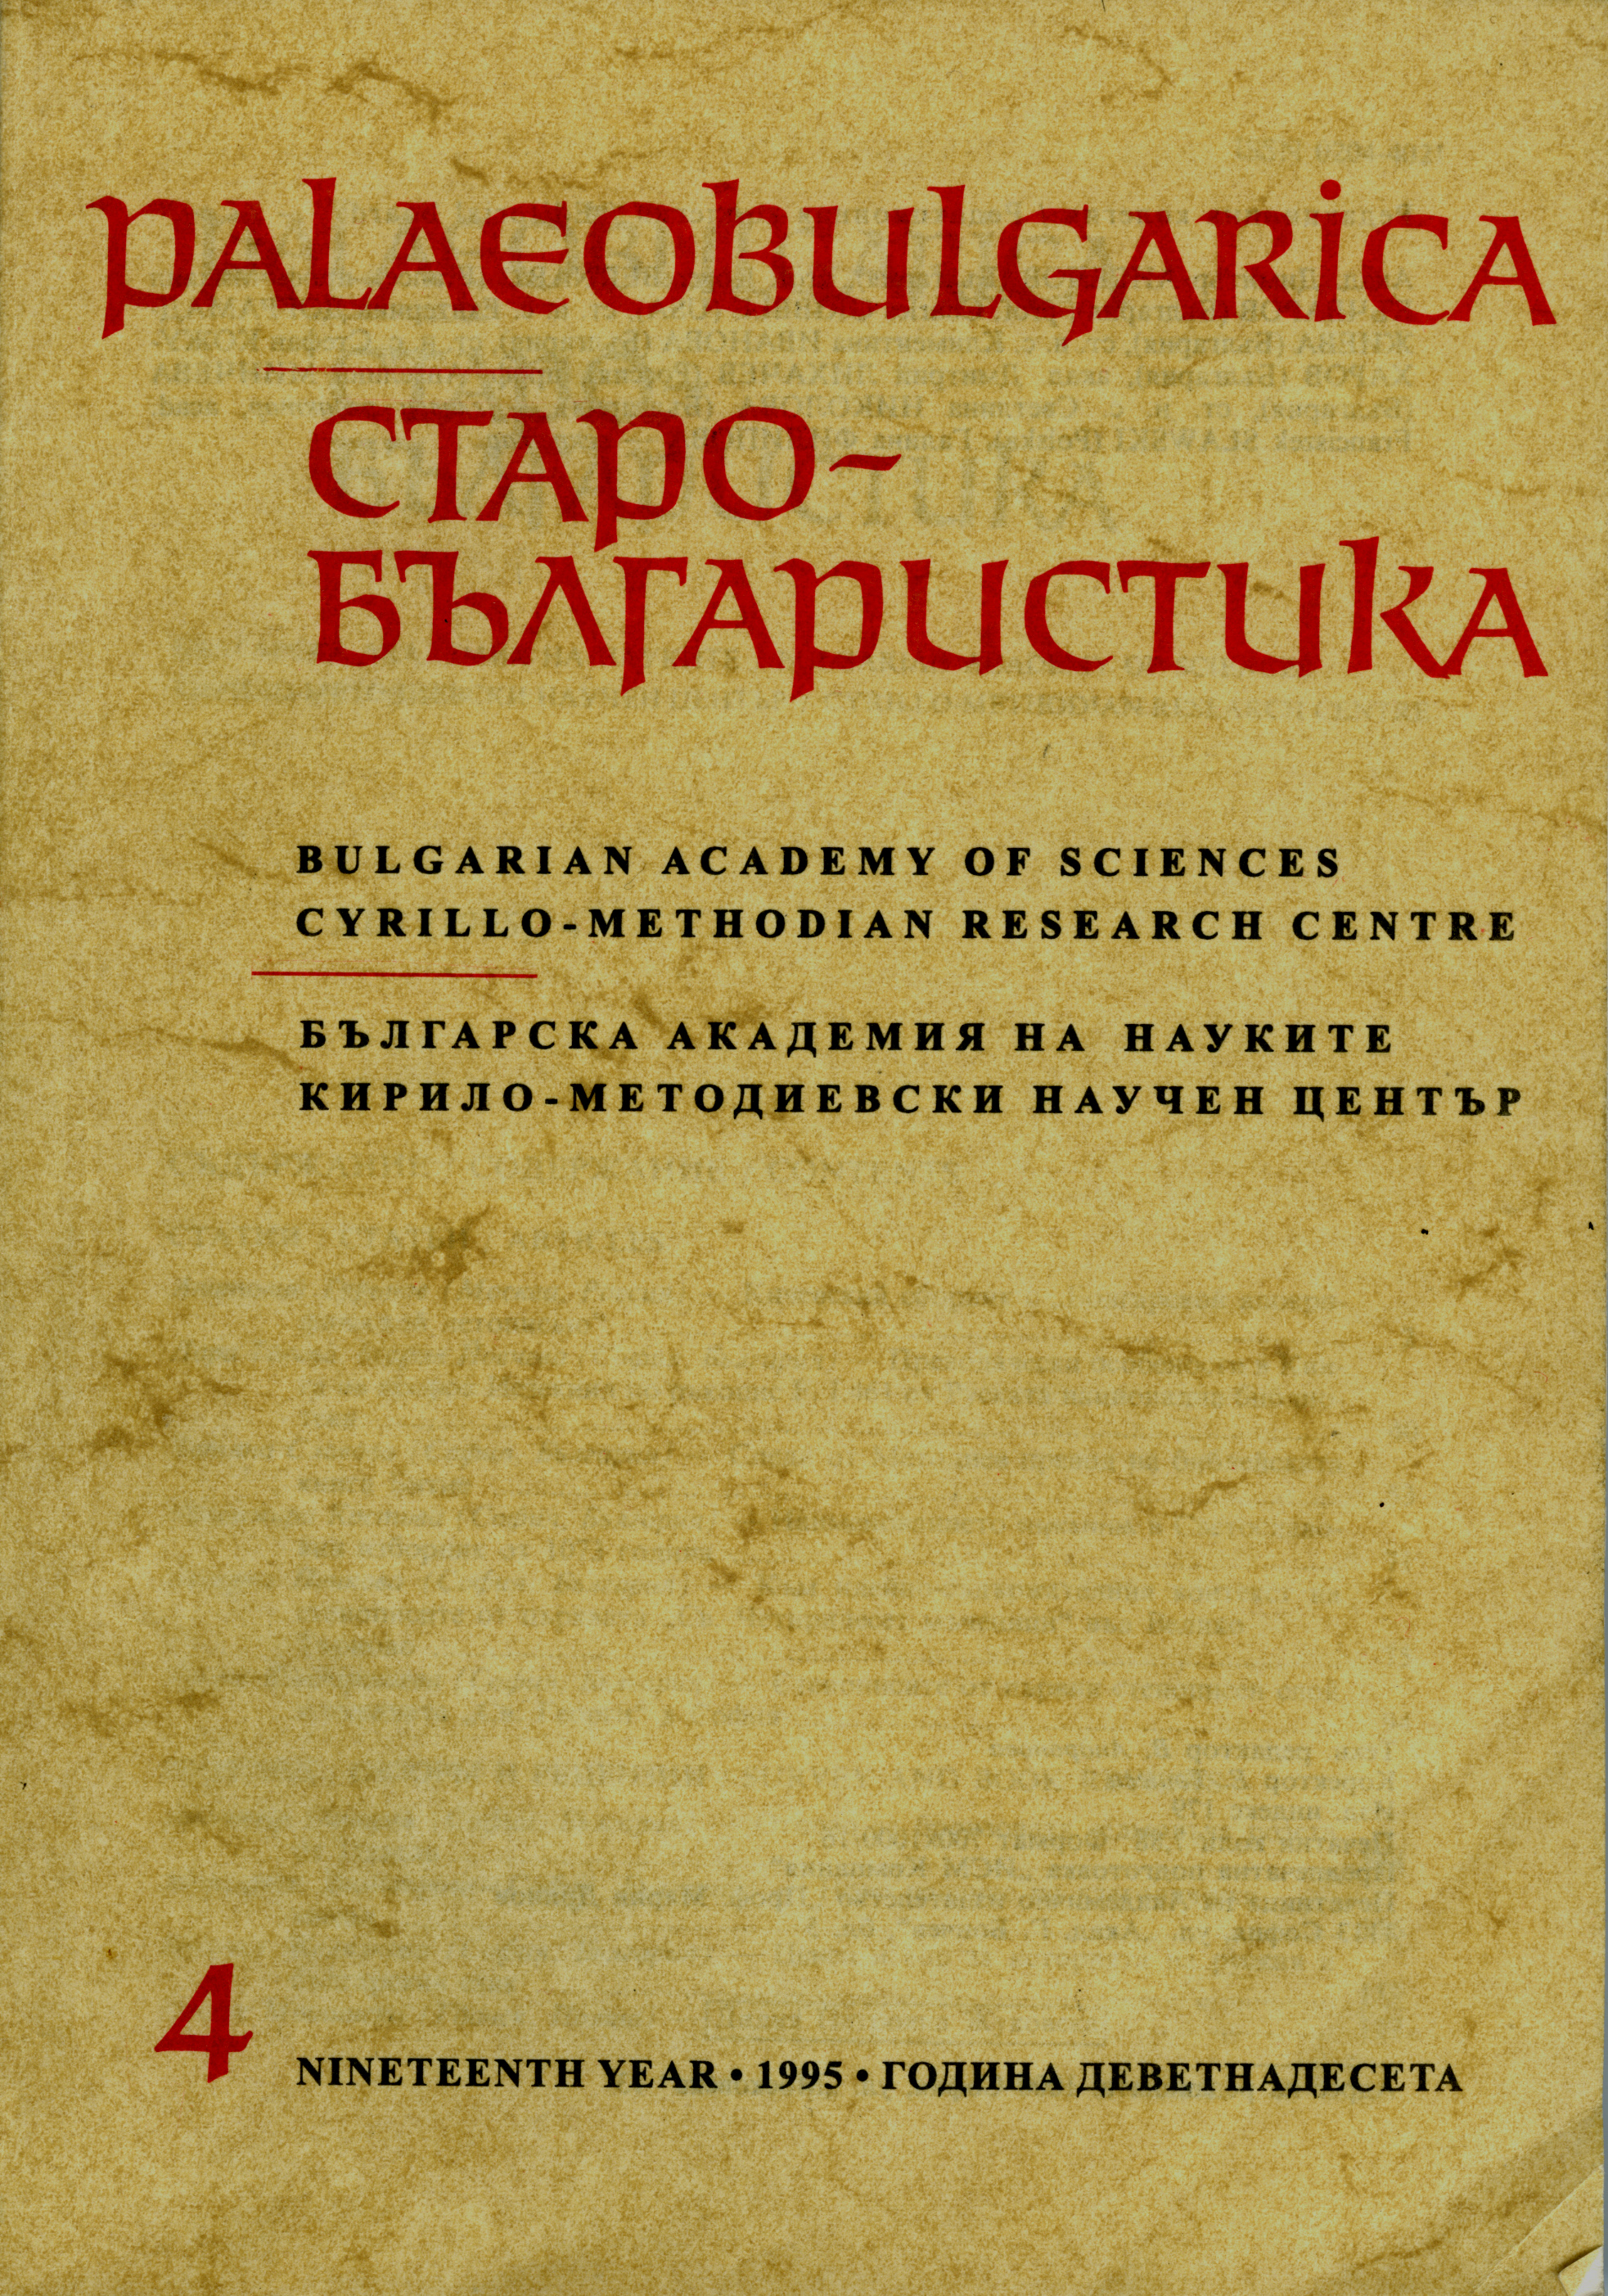 Наименованието оирканиа в Светославовия изборник от 1073 година Cover Image